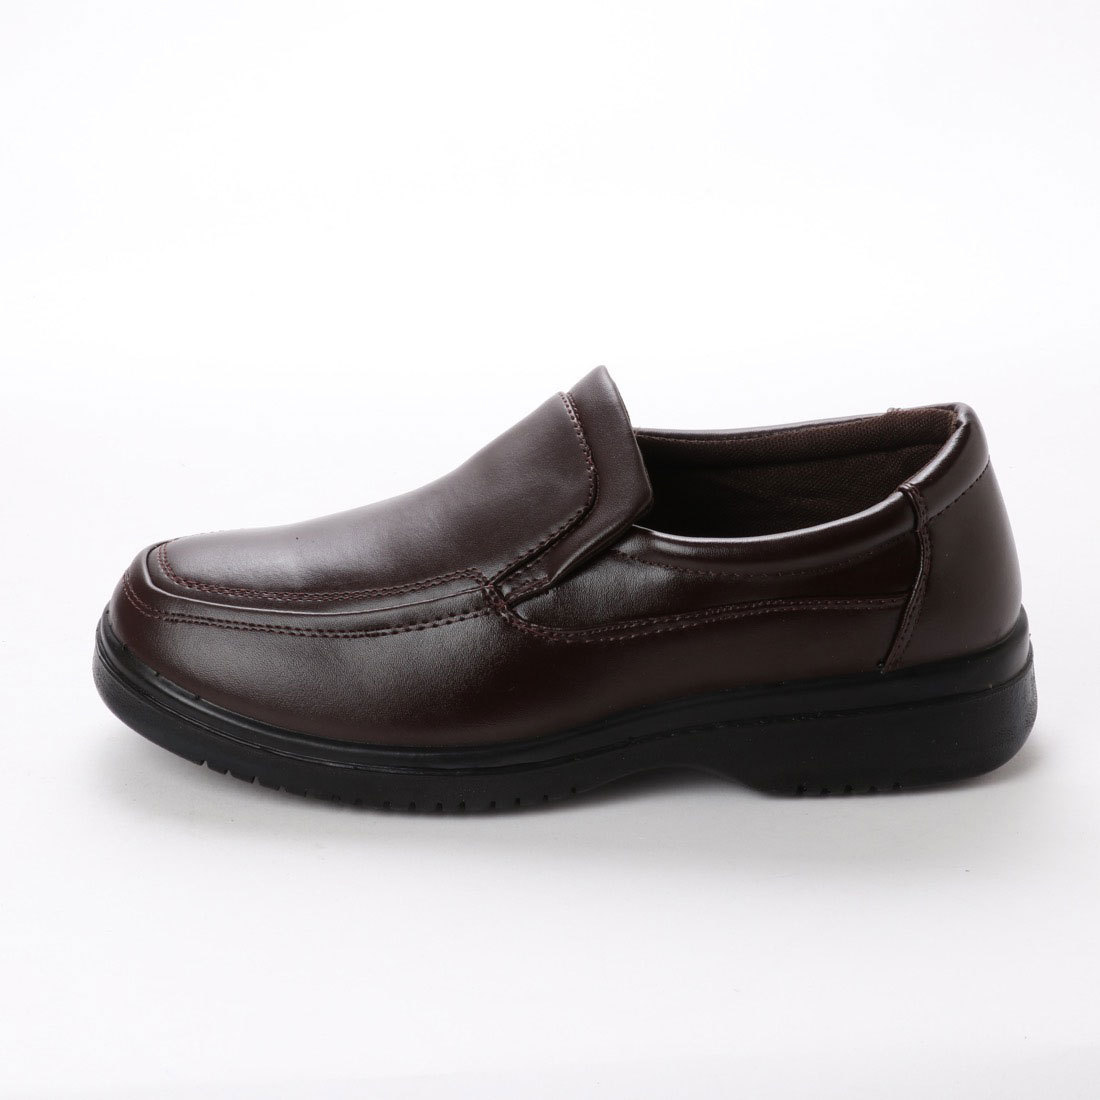 【 новый товар   неиспользуемый  】  повседневный  обувь    коричневый  25.5cm  чай   цвет  15108